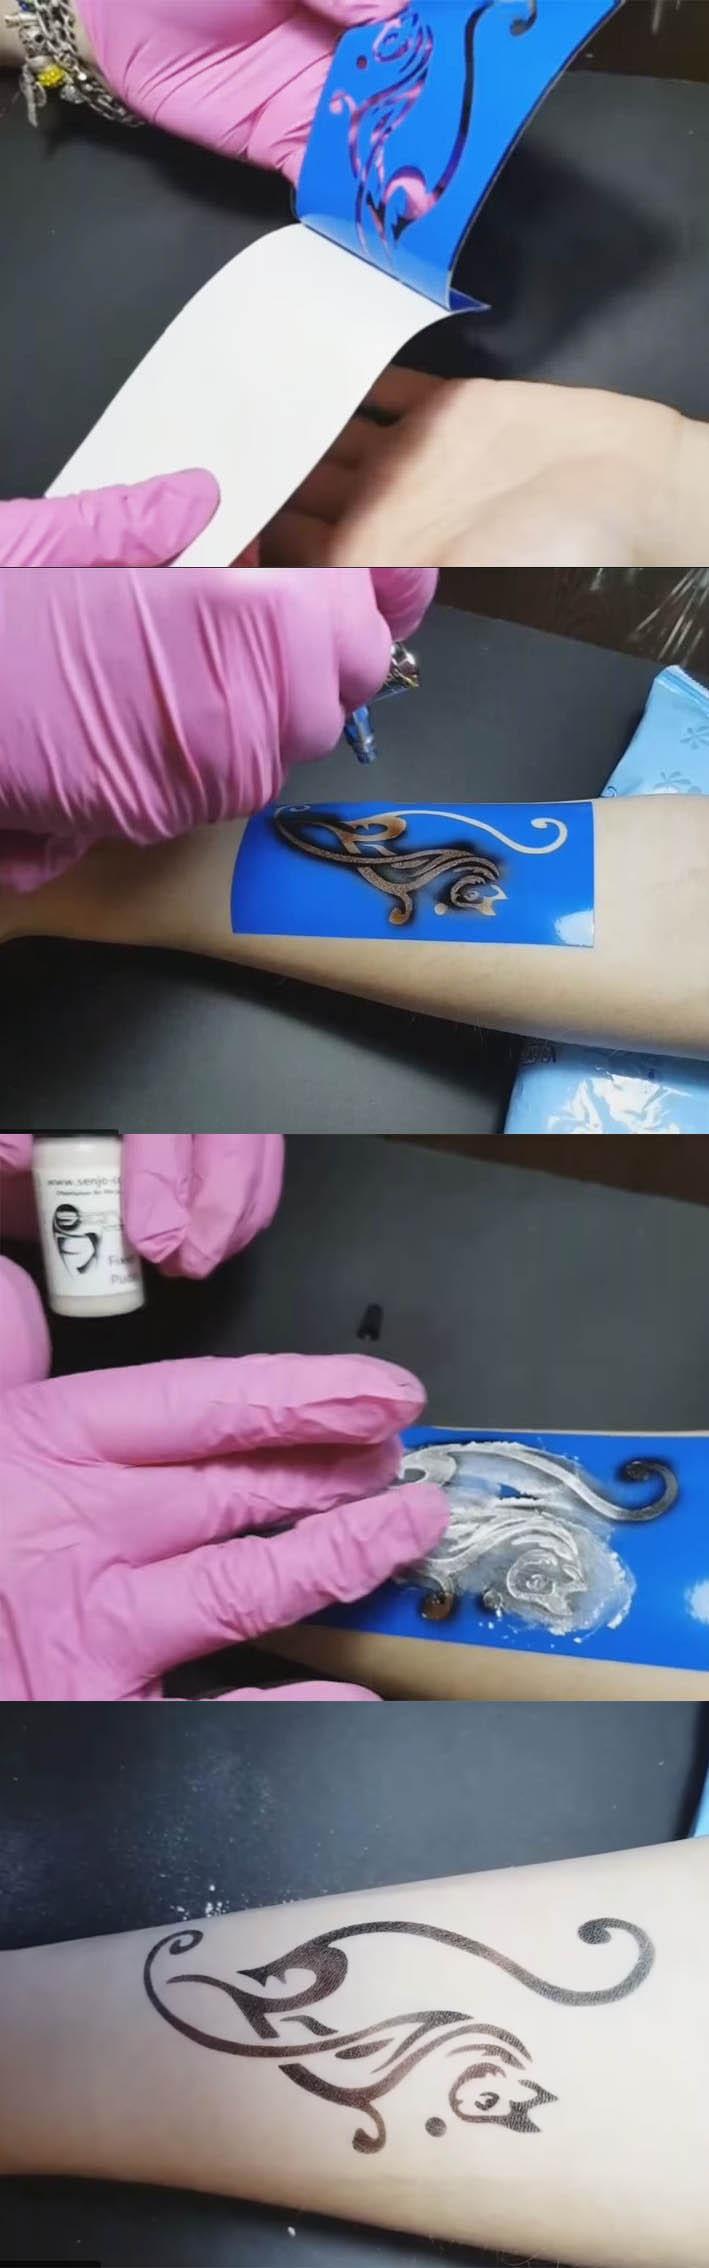 Airbrush tattoo